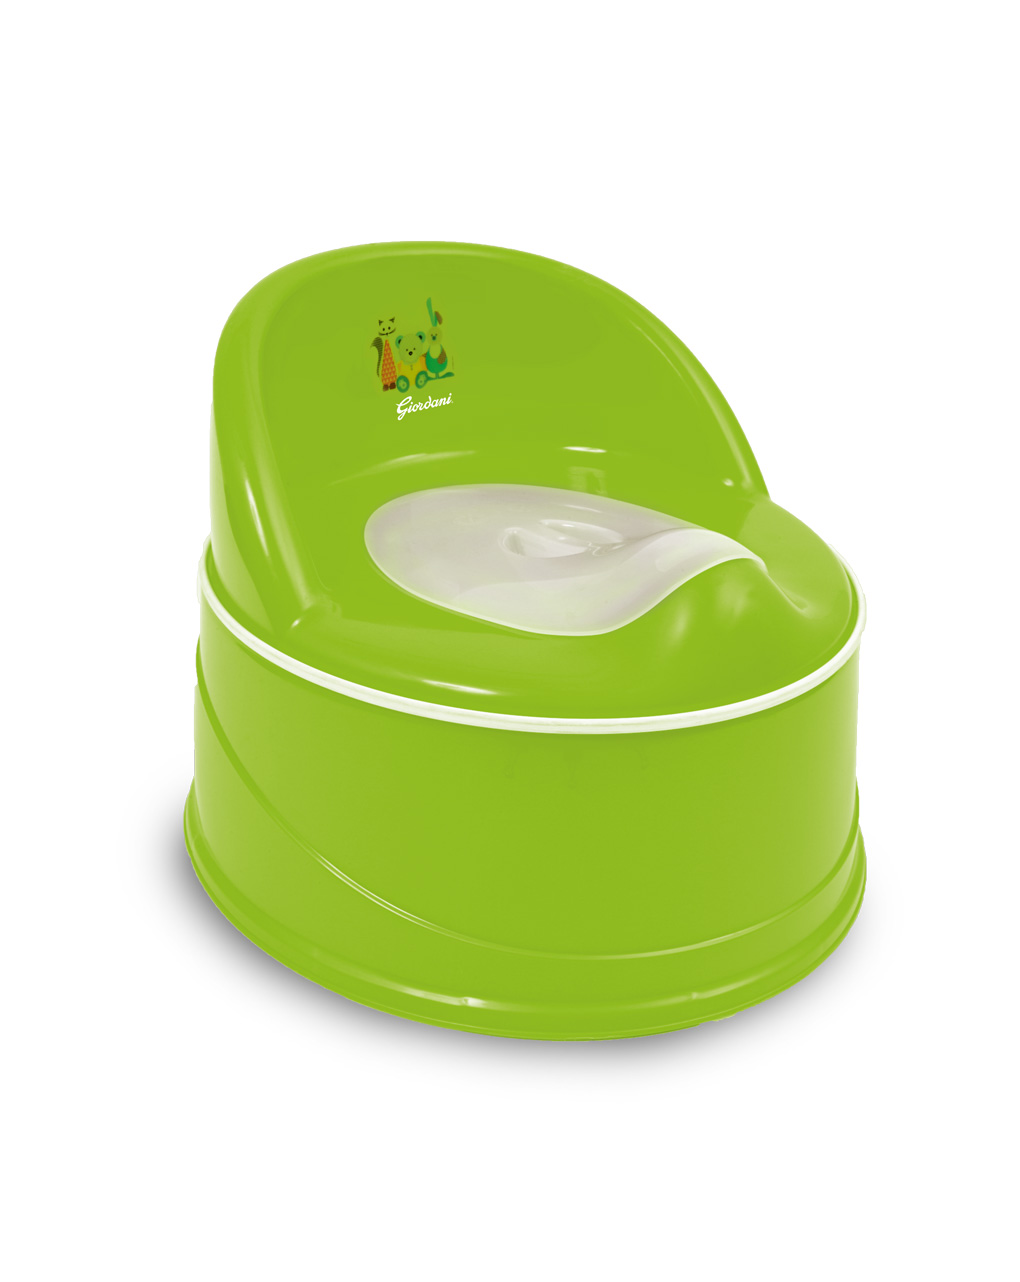 Redutor de penico + redutor de vaso sanitário + plataforma elevada verde - Giordani